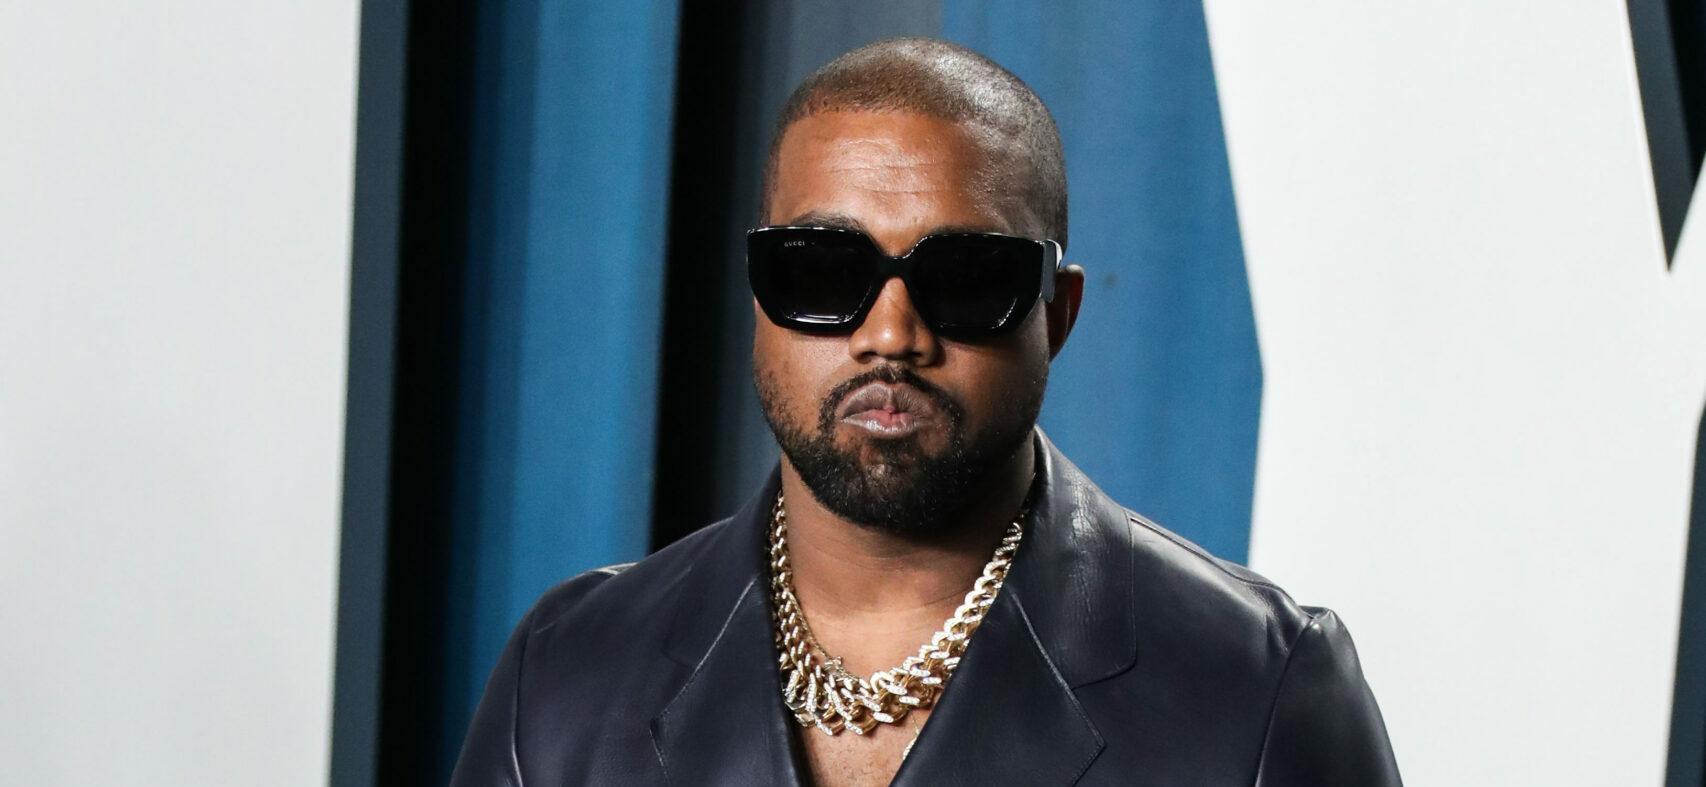 Kanye West poses